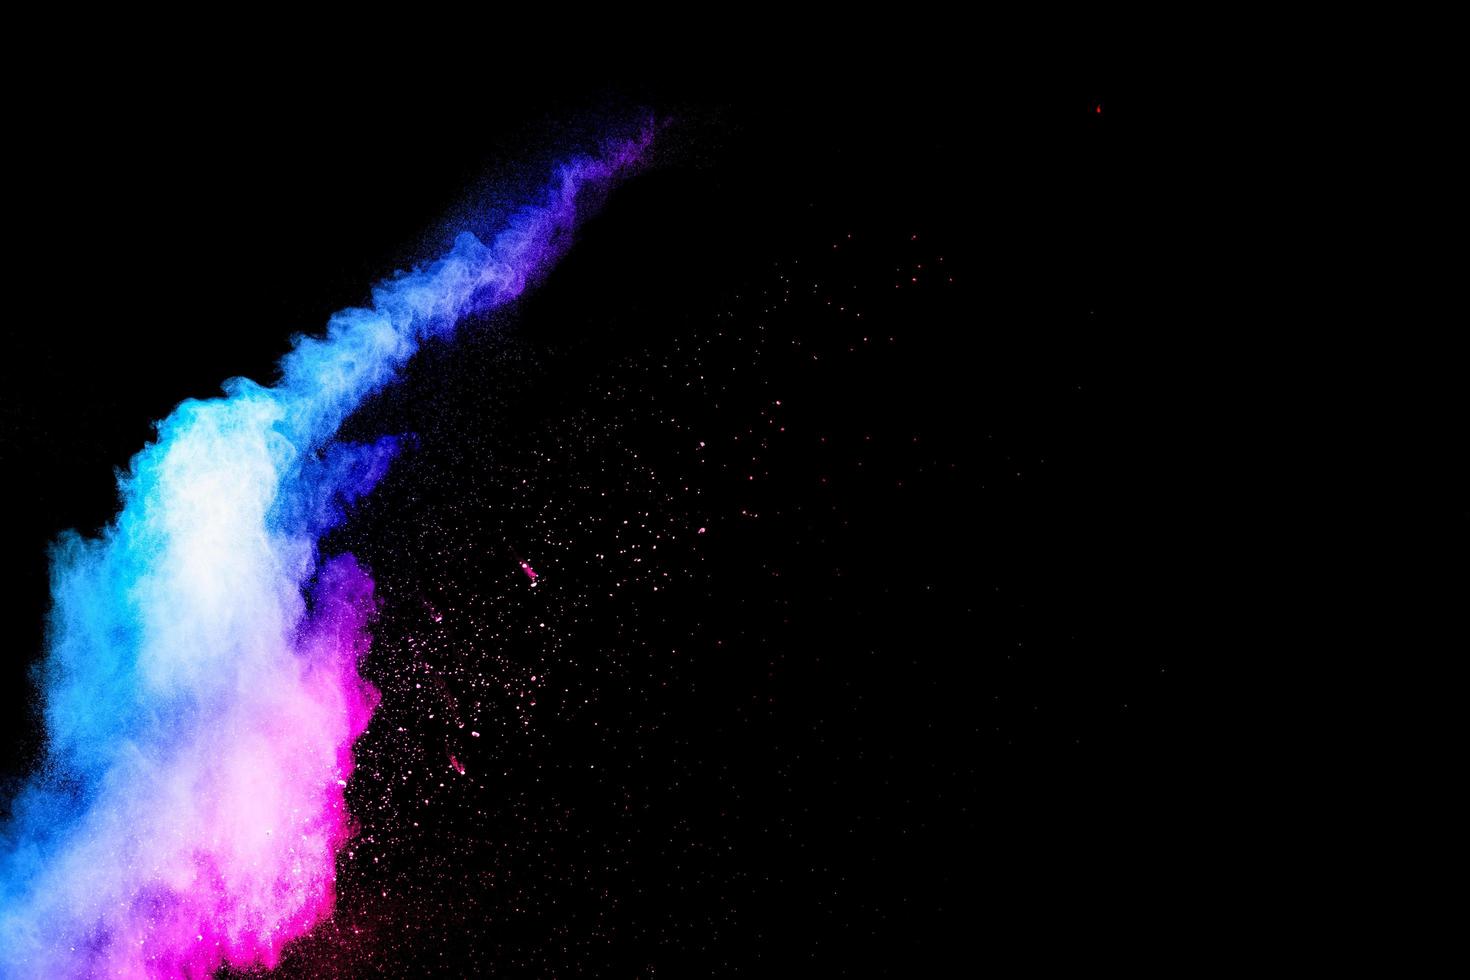 explosion abstraite de poussière bleu-rose sur fond noir. Poudre abstraite bleu-rose éclaboussé sur fond sombre photo